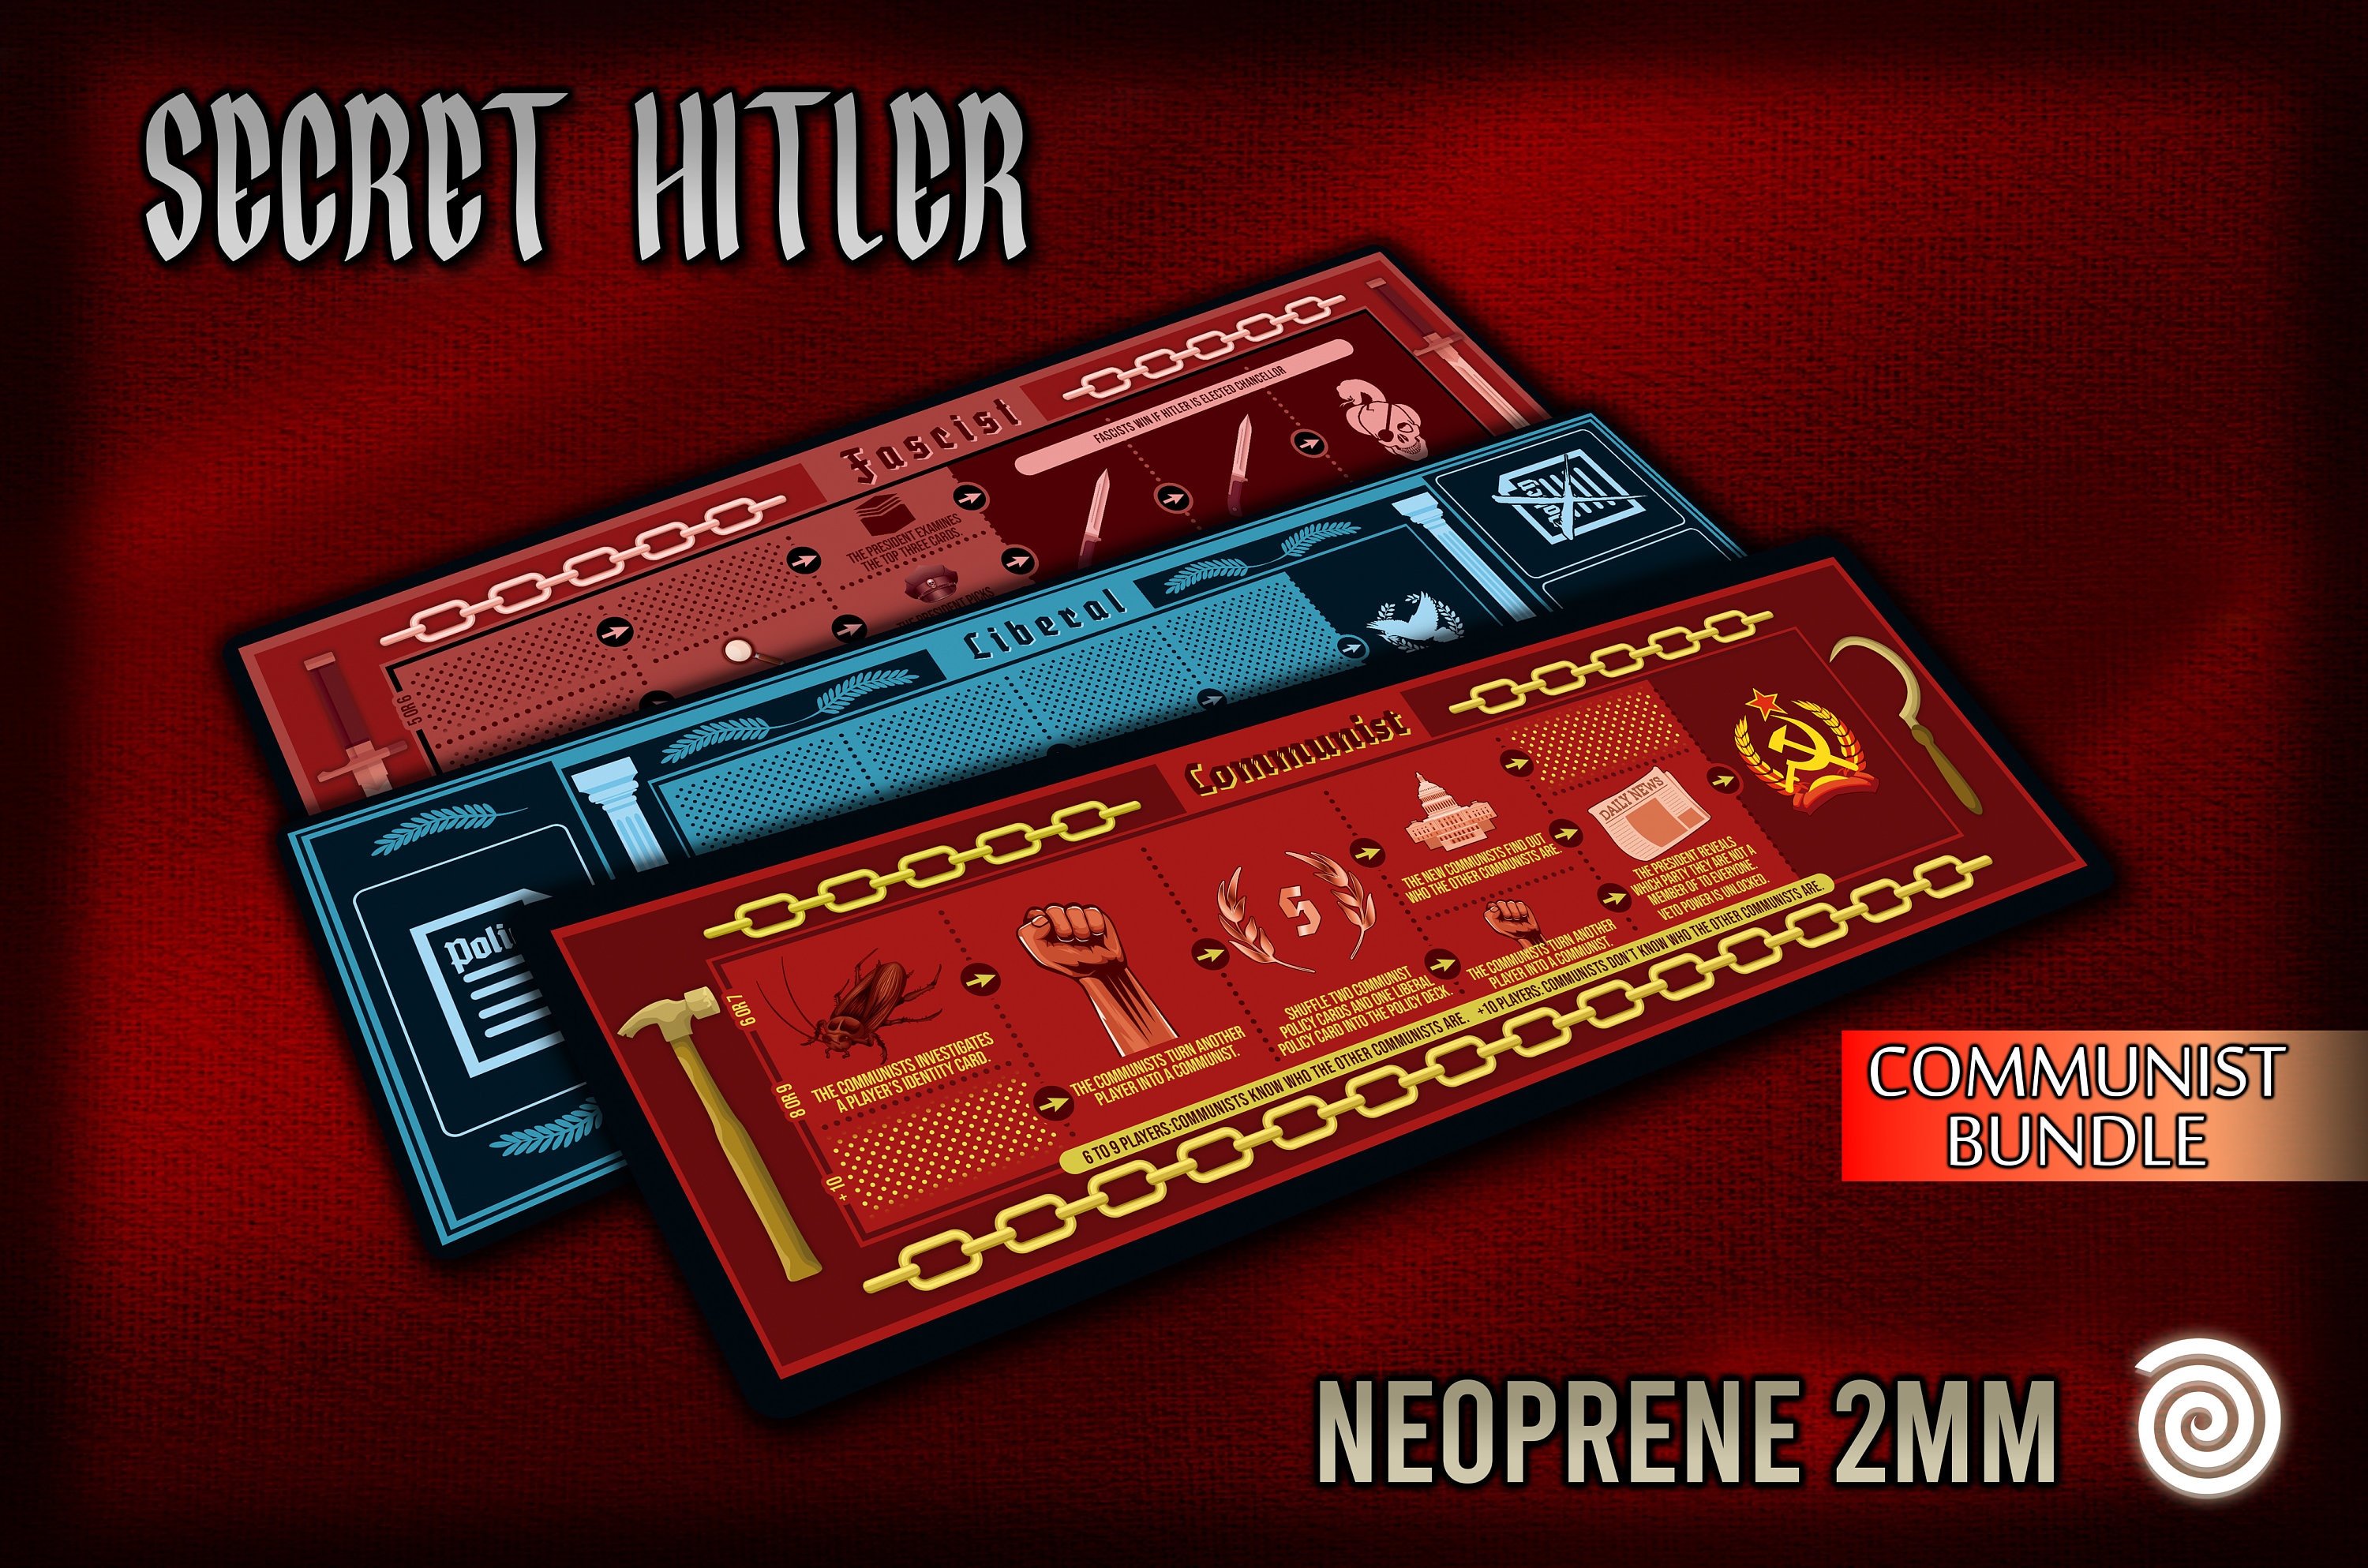 Se Cret Hi Tler Innovative Card Game of Secret Hitler - China